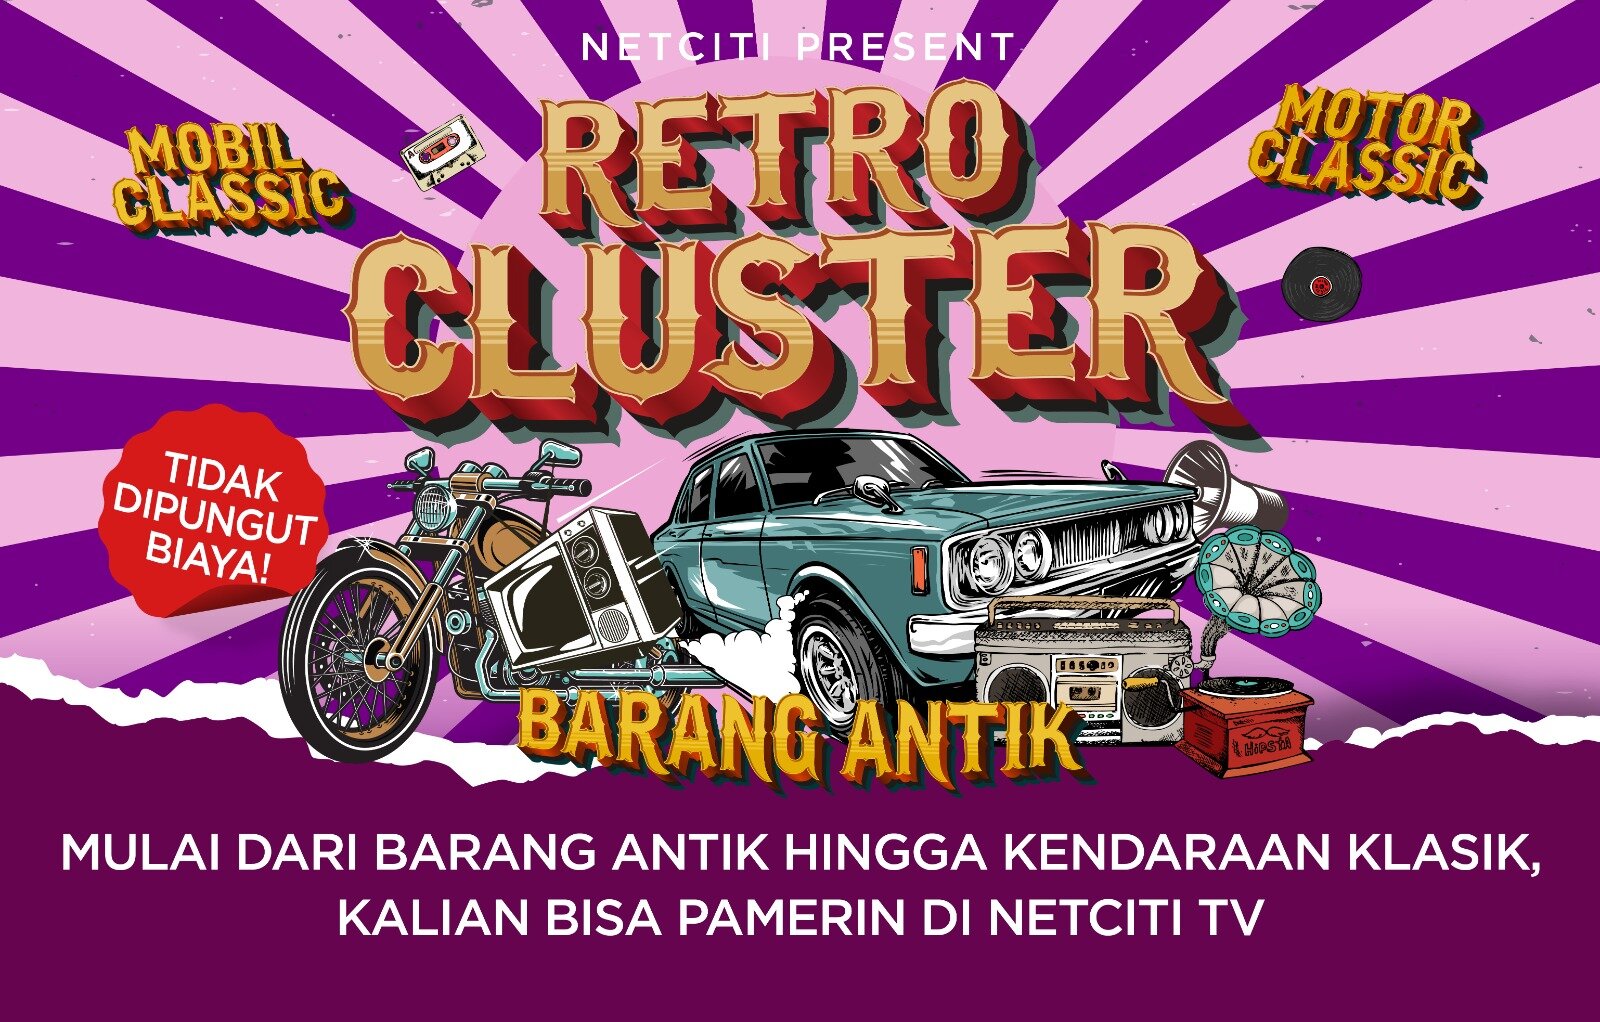 Mulai dari Barang Antik hingga Kendaraan Klasik, Kalian Bisa Pamerin Di Netciti Tv